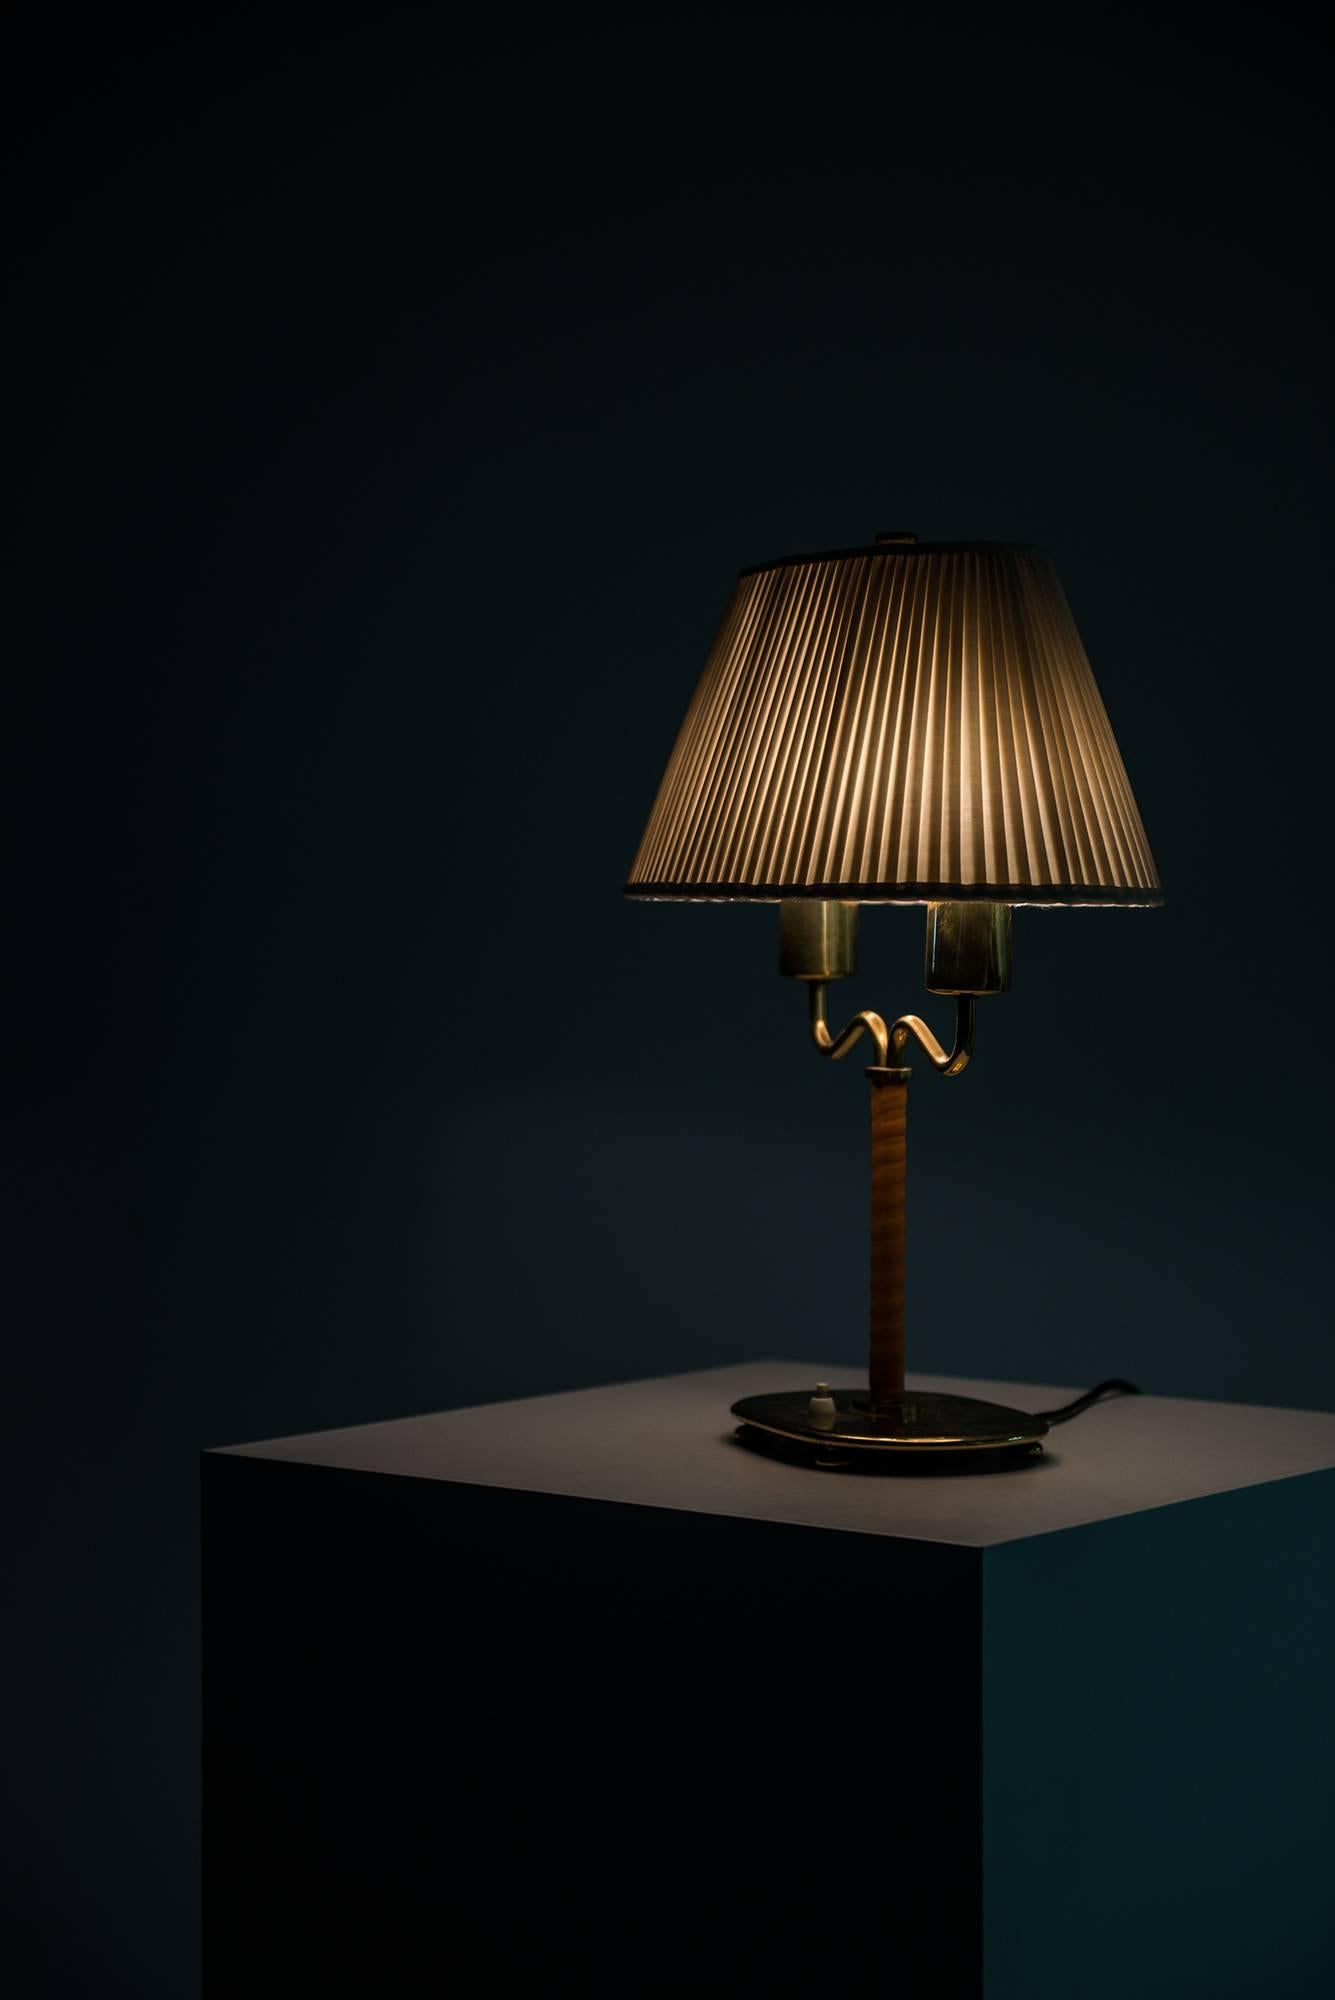 Josef Frank Table Lamp Model 2388 by Svenskt Tenn in Sweden 1